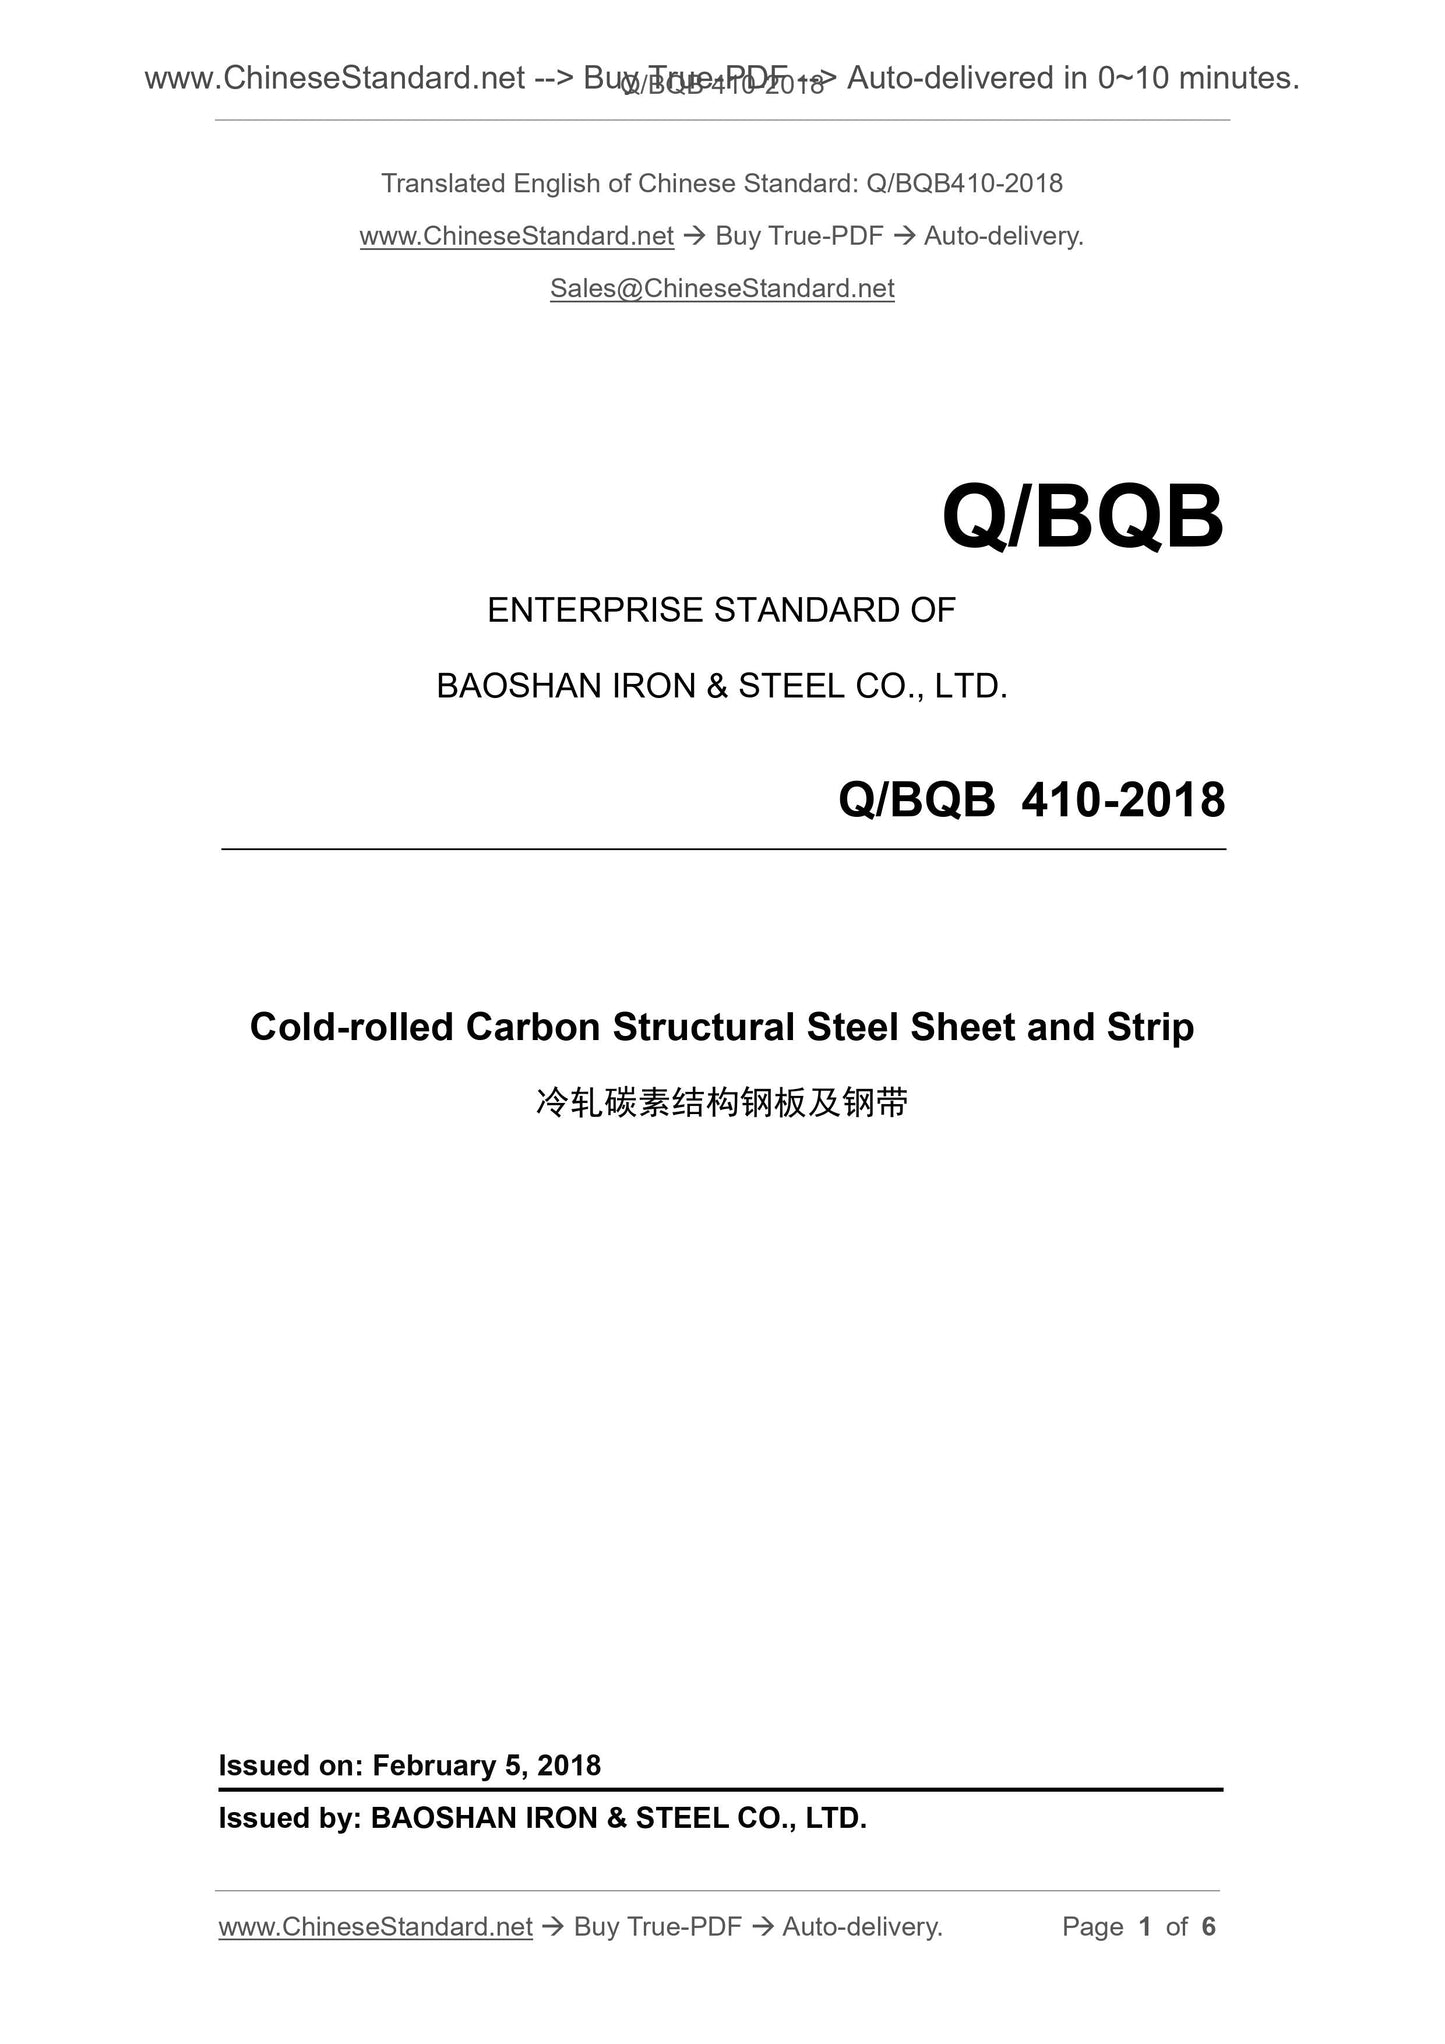 Q/BQB 410-2018 Page 1